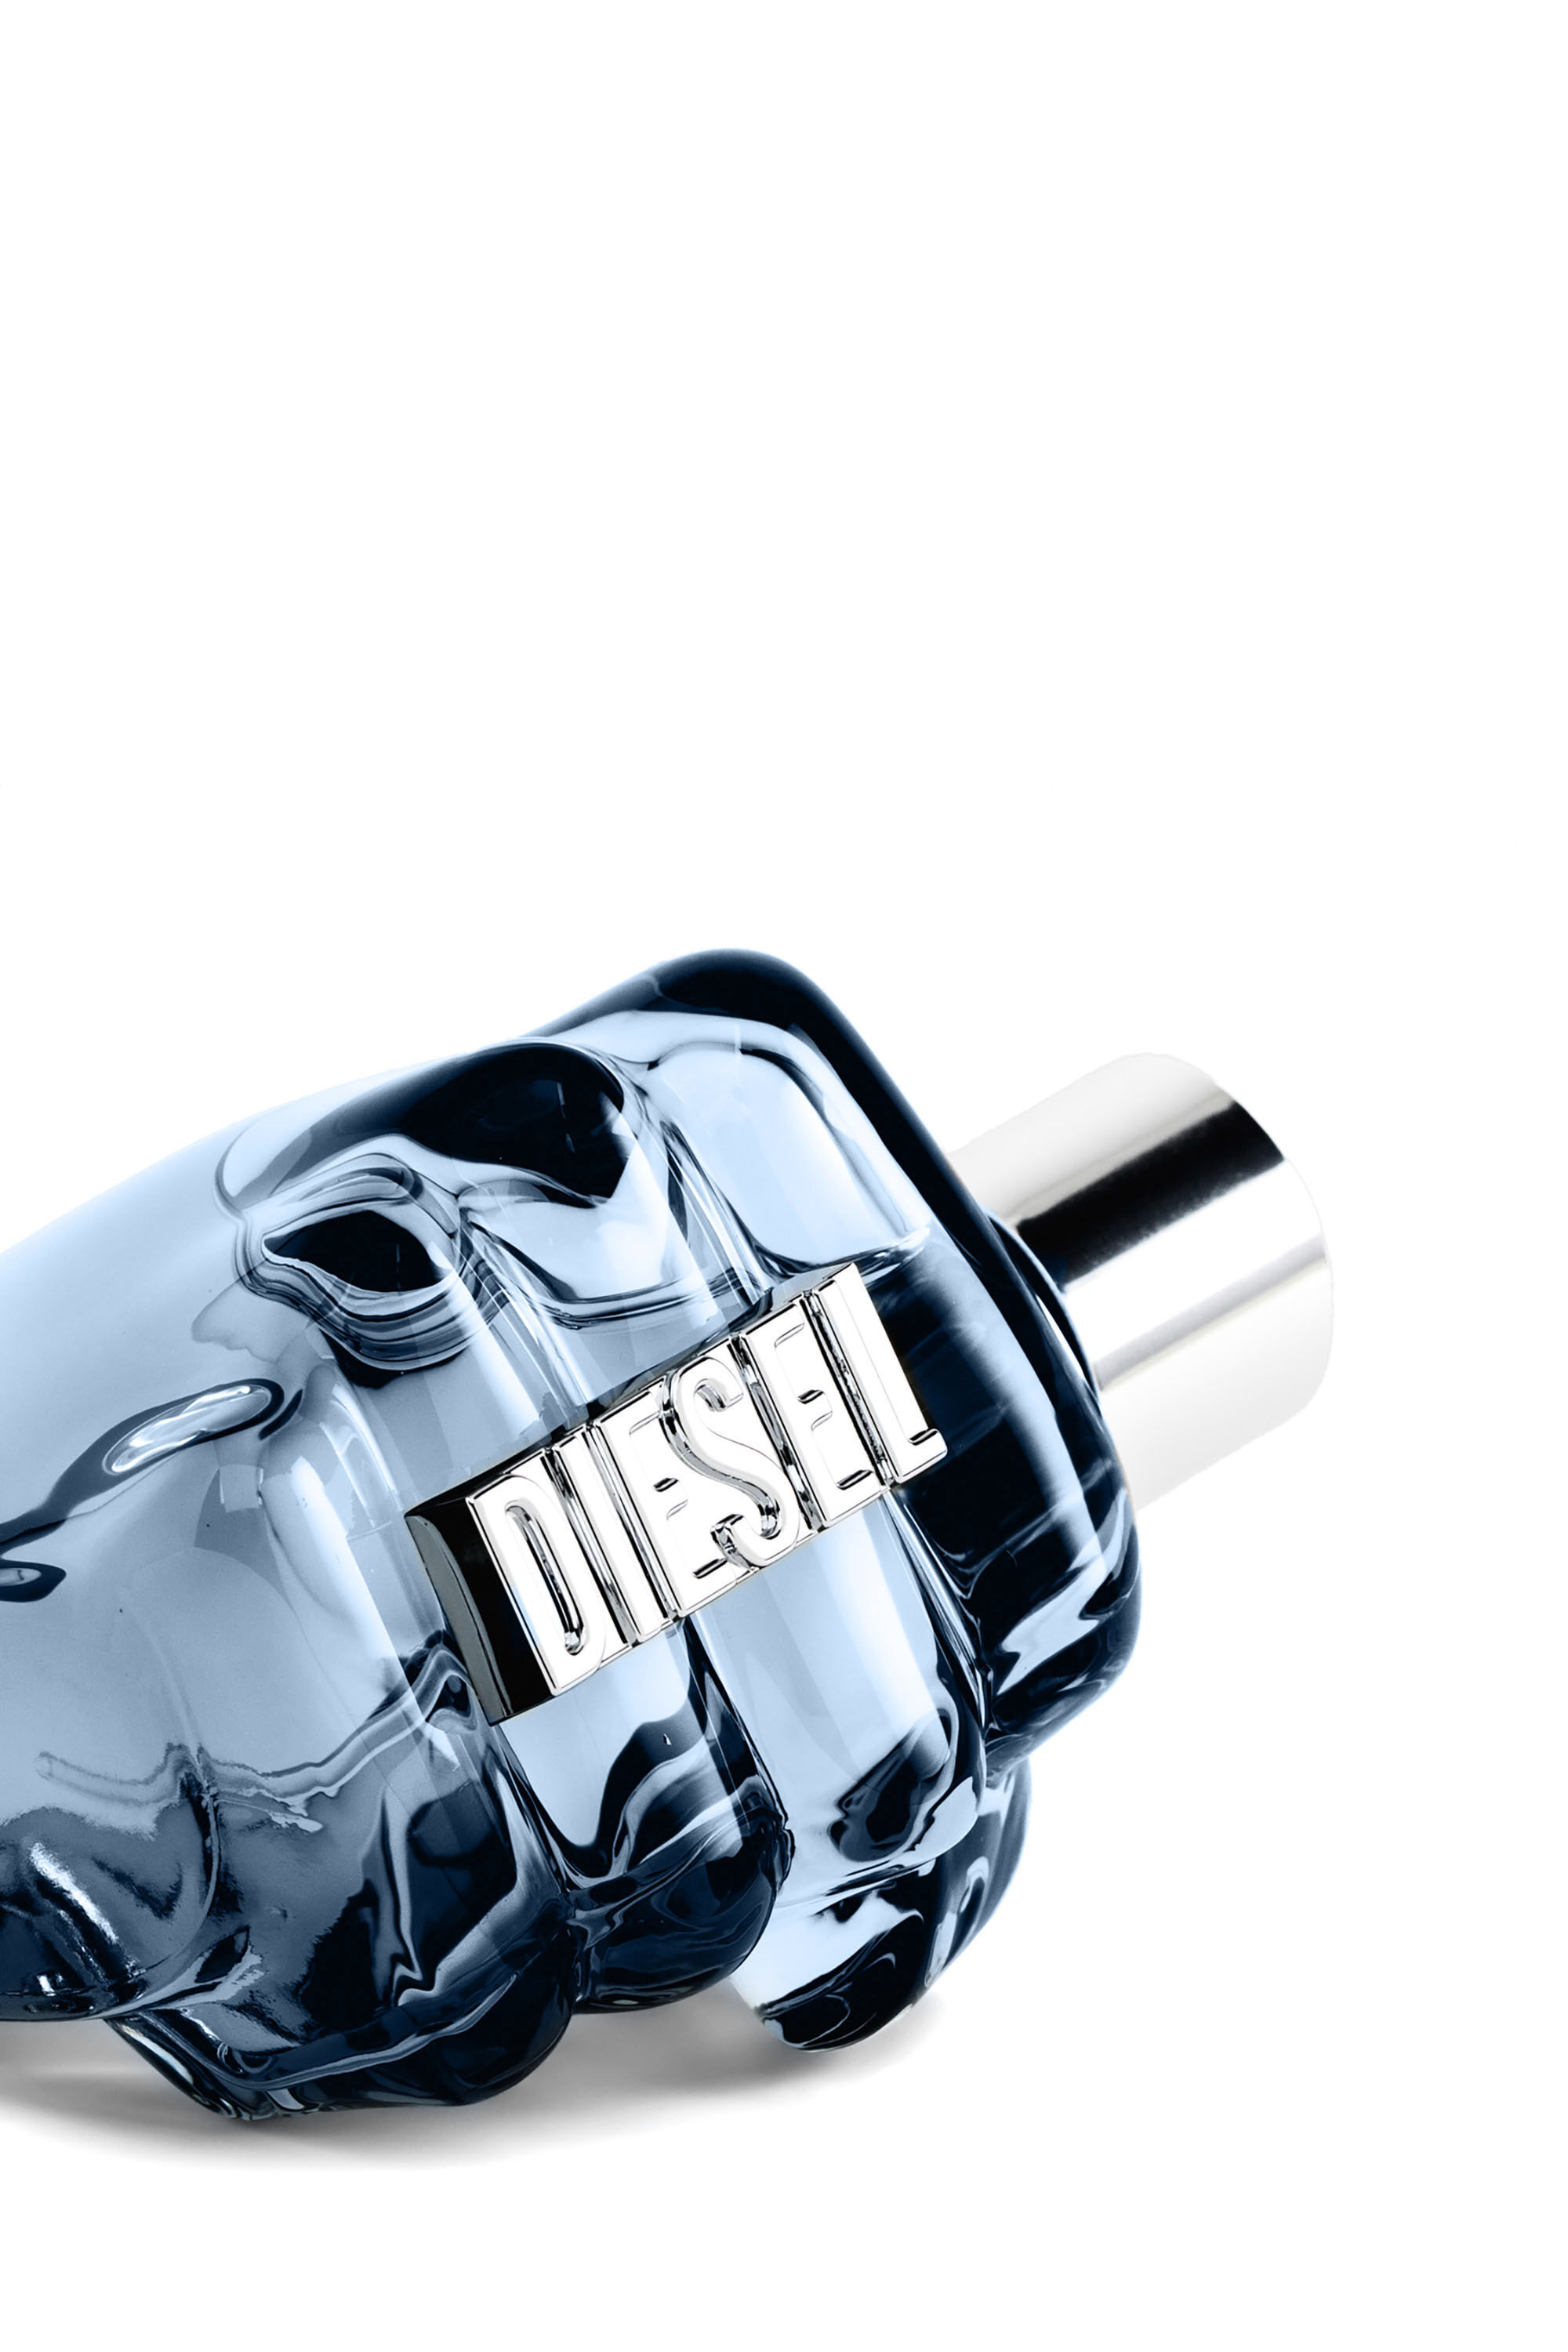 Diesel - OTB EDT 200 ML, Homme Only The Brave 200ml, Eau de Toilette in Bleu - Image 3